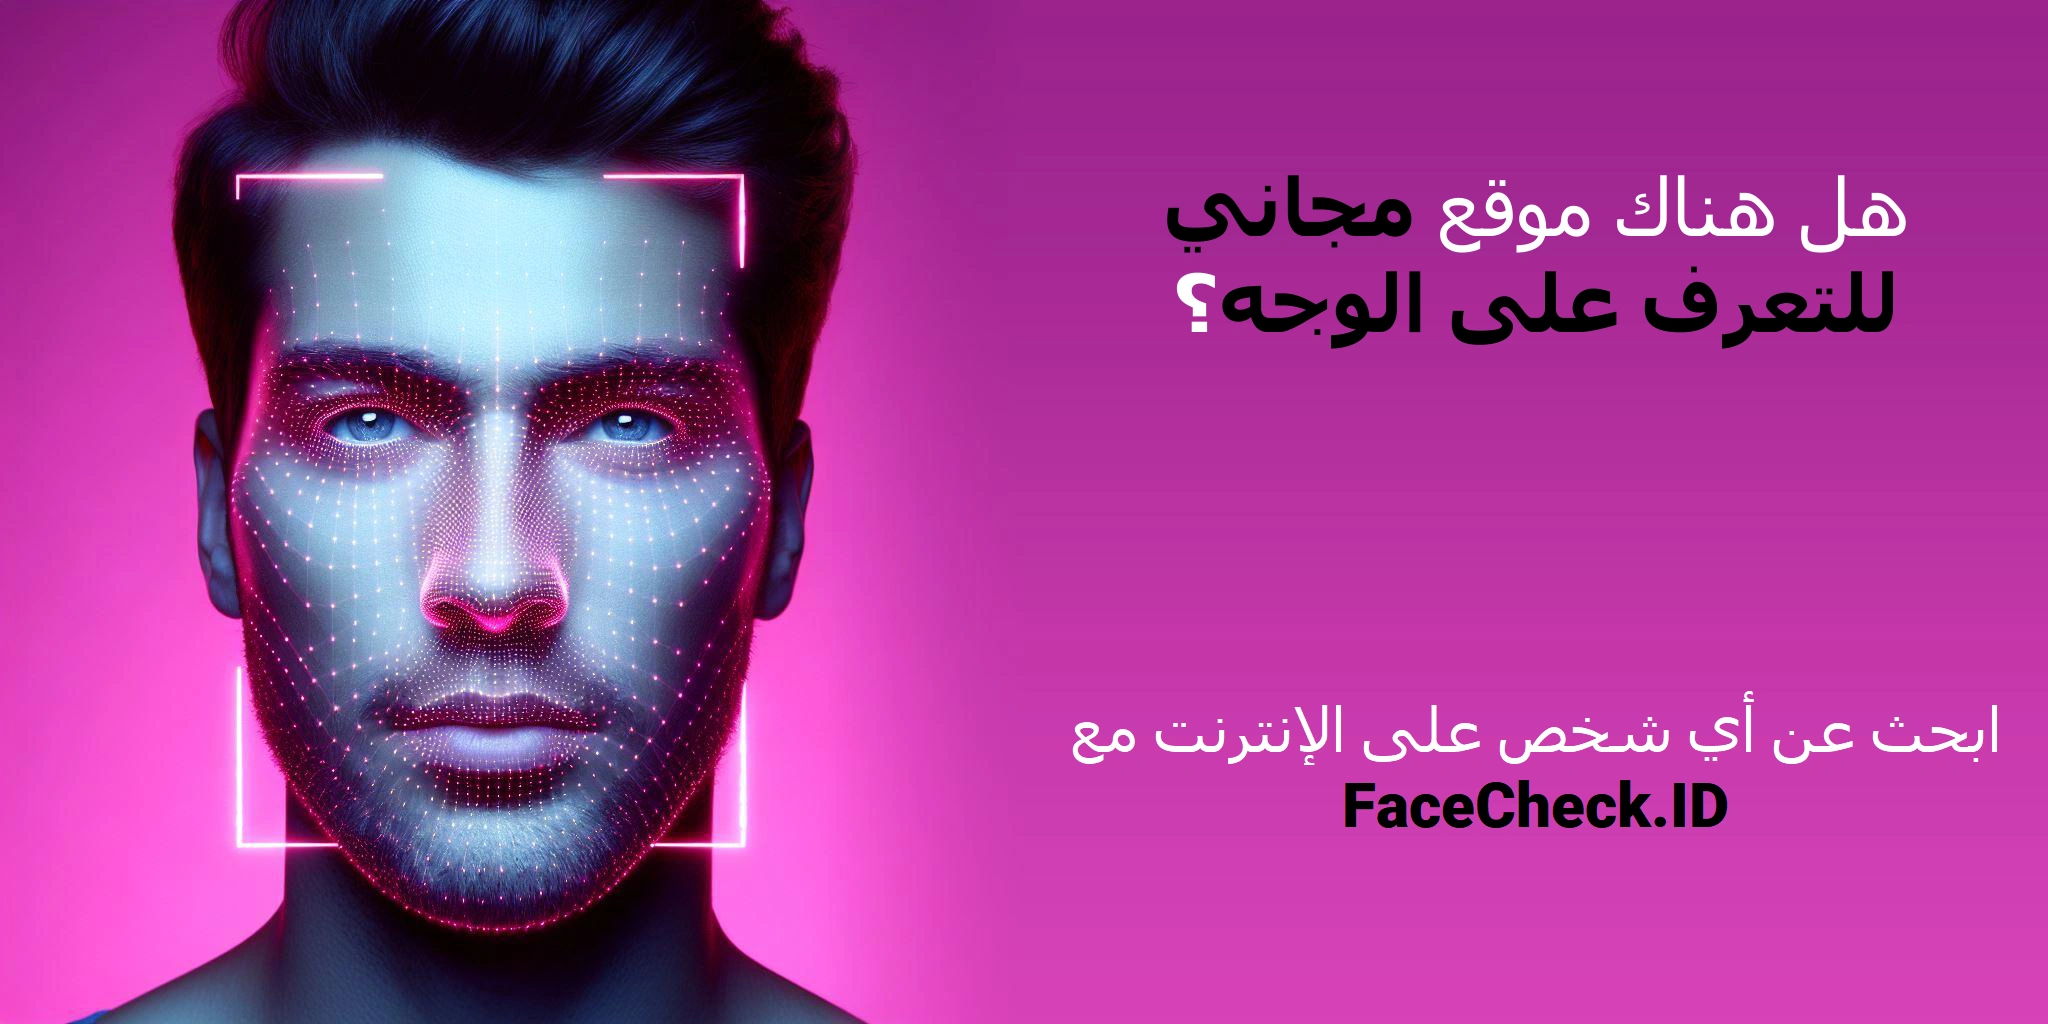 هل هناك موقع مجاني للتعرف على الوجه؟ ابحث عن أي شخص على الإنترنت مع FaceCheck.ID